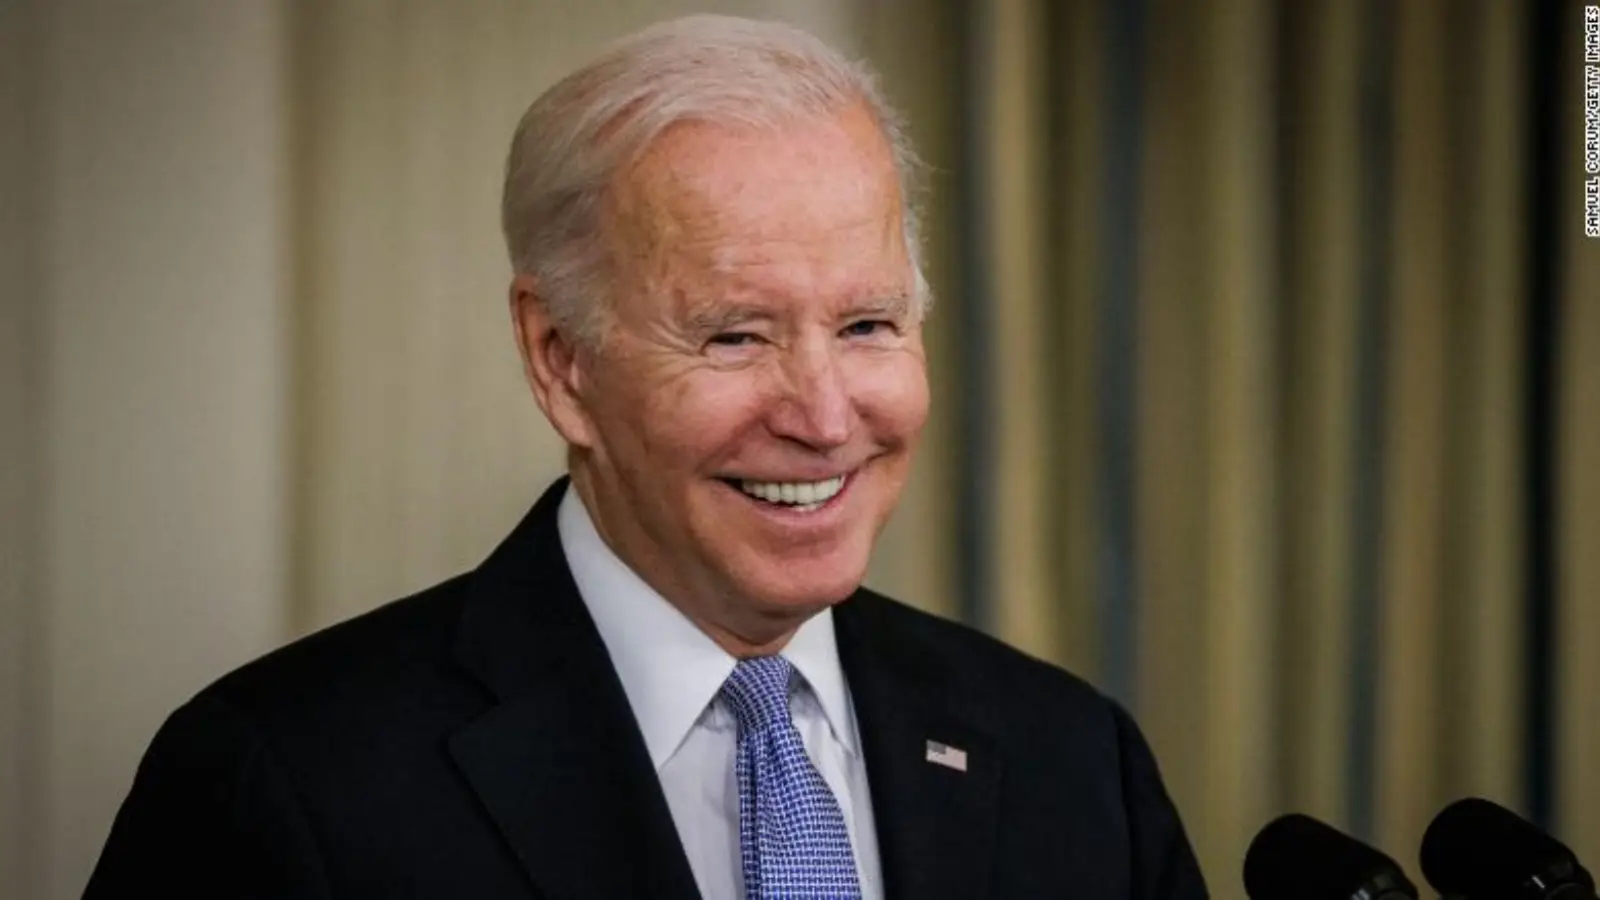 Joe Biden ostro skrytykował Rosję w przemówieniu wygłoszonym przed Narodami Zjednoczonymi